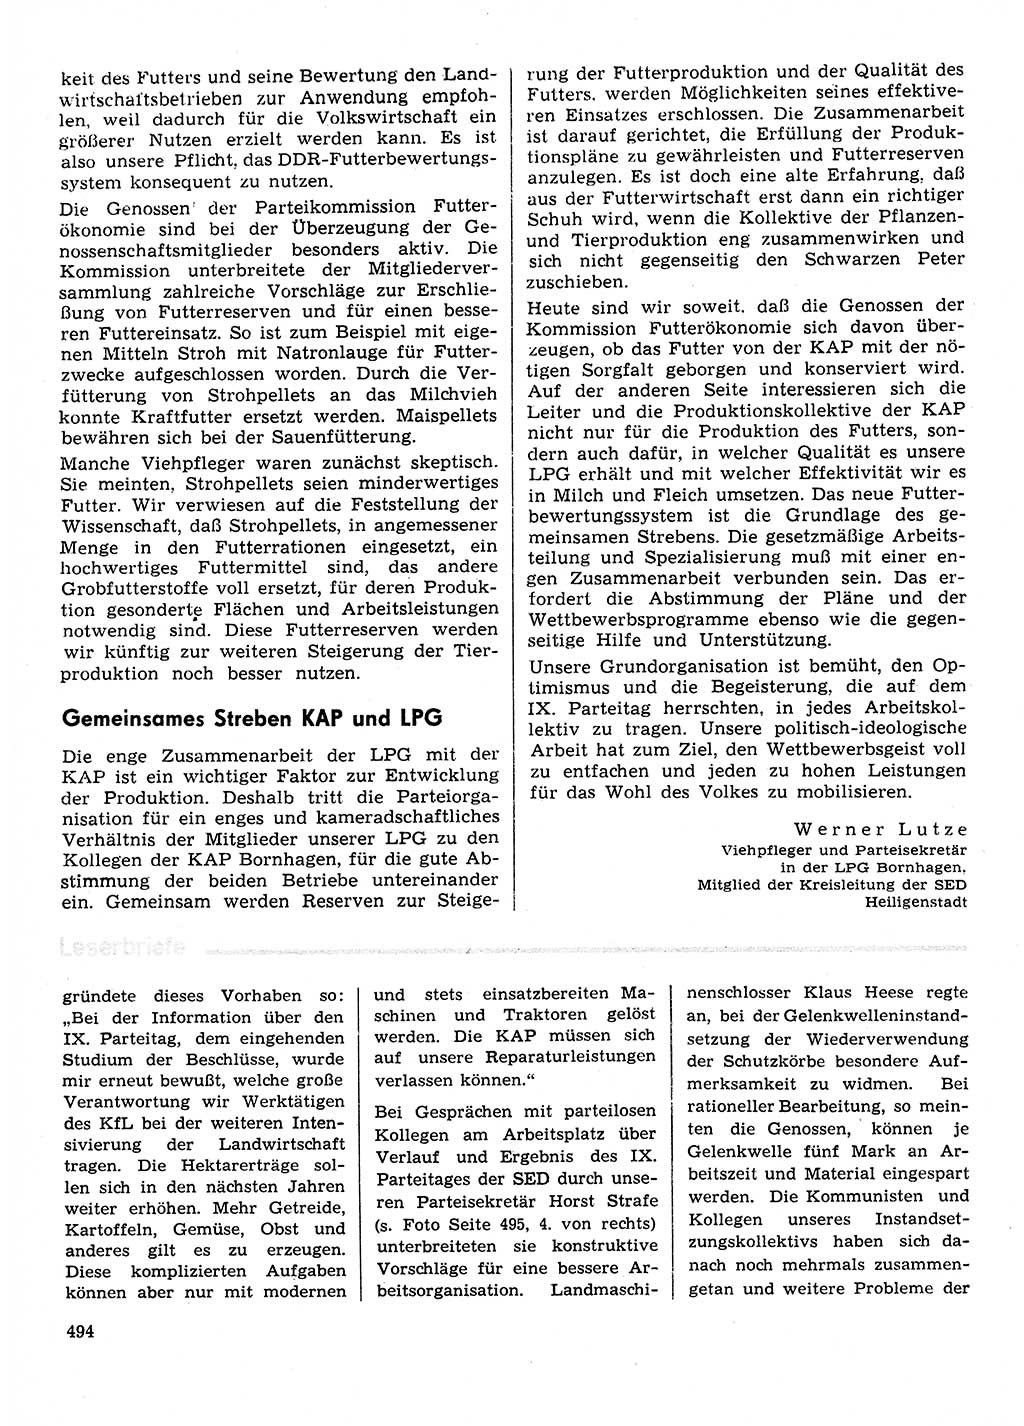 Neuer Weg (NW), Organ des Zentralkomitees (ZK) der SED (Sozialistische Einheitspartei Deutschlands) für Fragen des Parteilebens, 31. Jahrgang [Deutsche Demokratische Republik (DDR)] 1976, Seite 494 (NW ZK SED DDR 1976, S. 494)